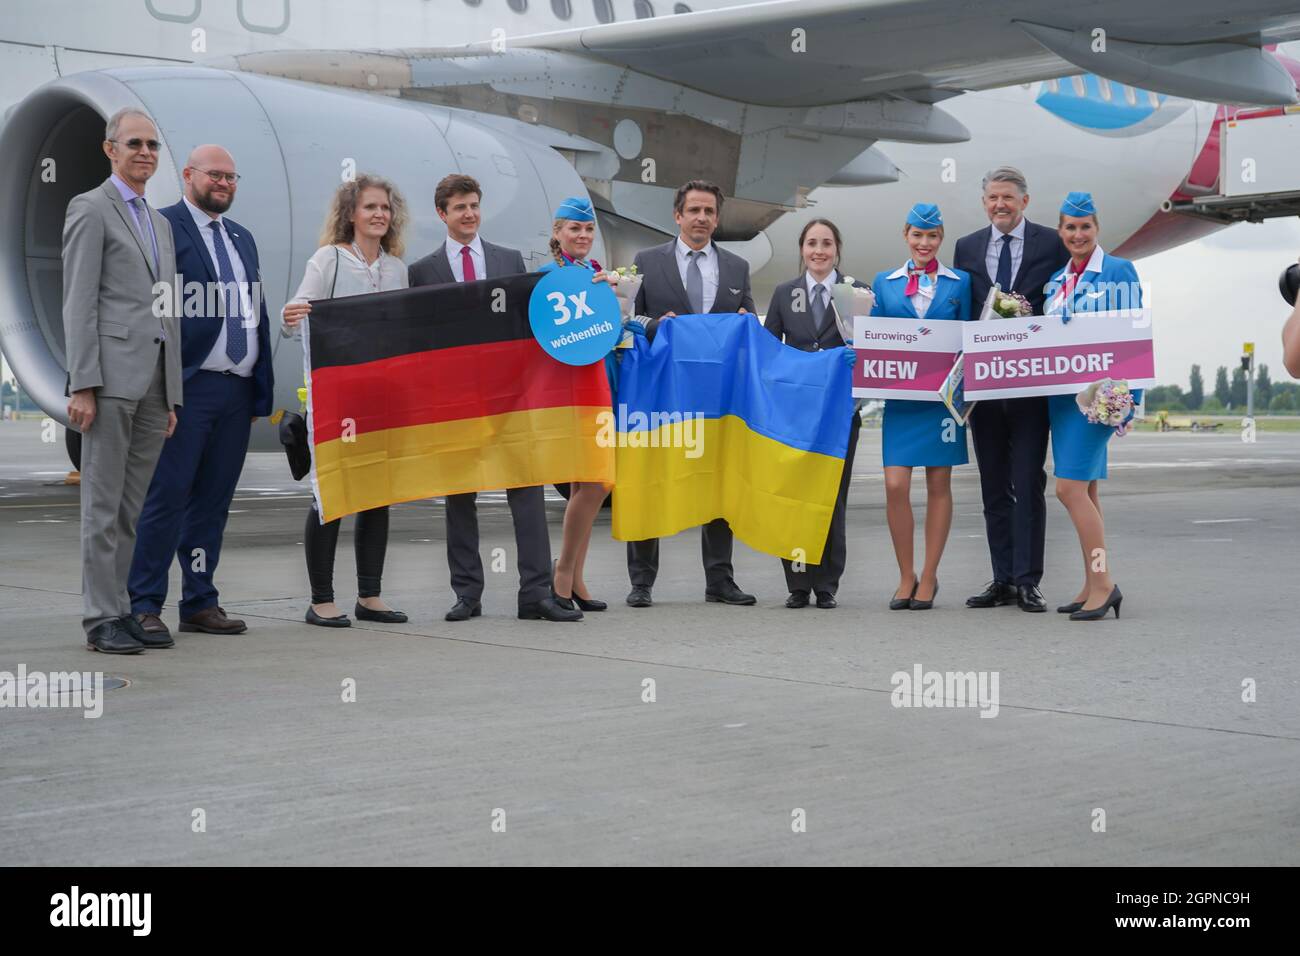 Ucraina, Kiev - 1 settembre 2021: Stewardesses e piloti. Stewardess che detiene la bandiera della Germania. Il pilota sorride. Equipaggio. Aereo della compagnia aerea Eurowings. Aircraft Airbus A320-214 D-AEWU all'aeroporto. Foto Stock